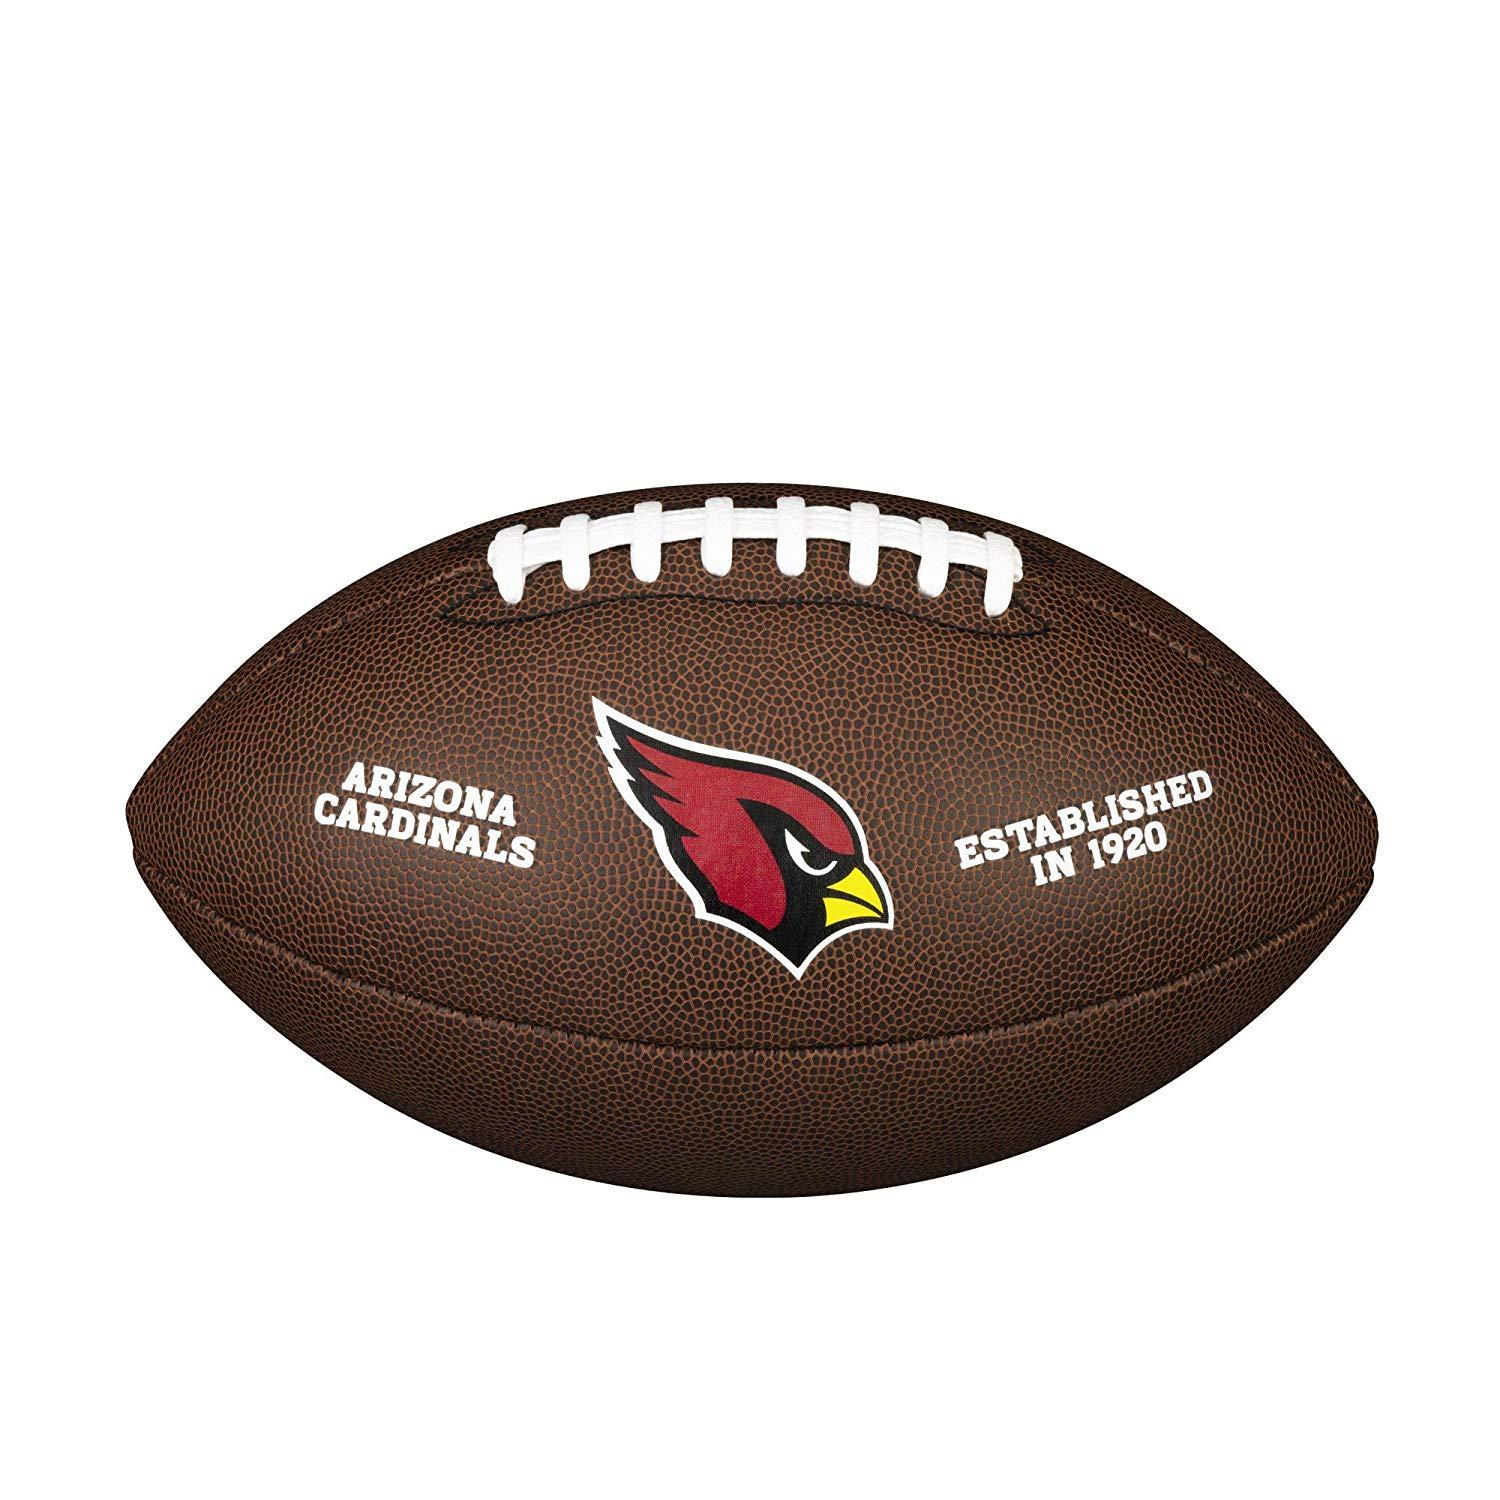 Cardinals Football Logo - Amazon.com : NFL Team Logo Composite Football, Official